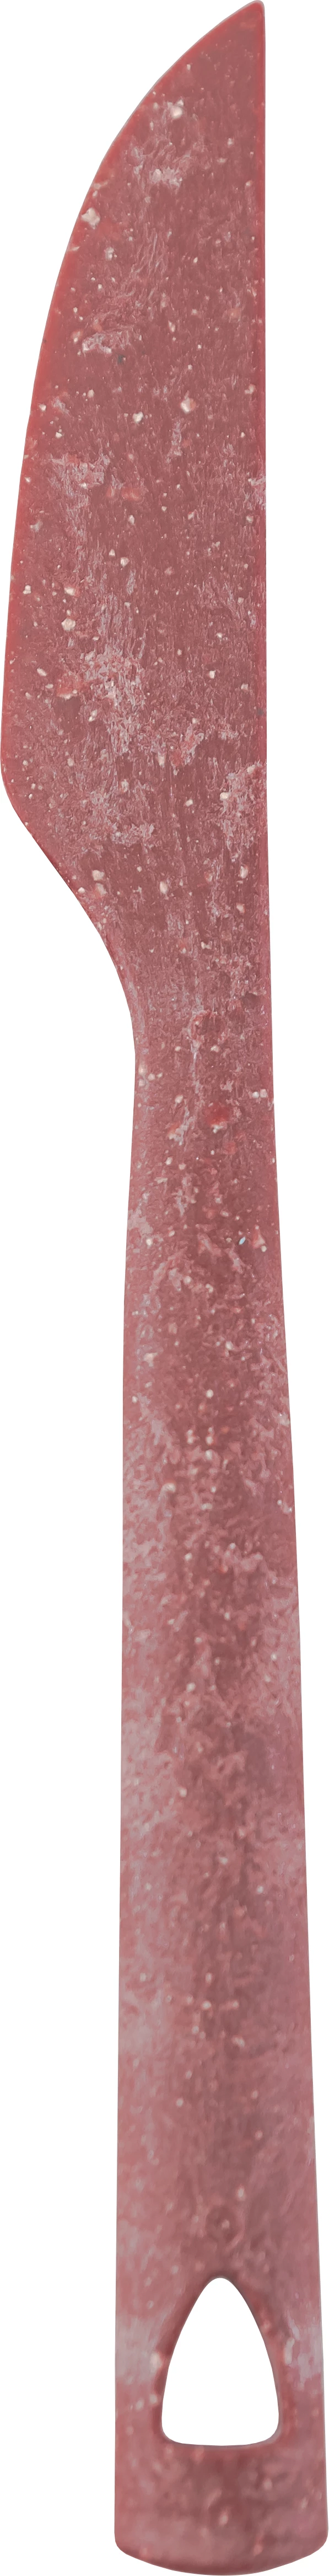 Kupilka kniv, rød, 20 cm